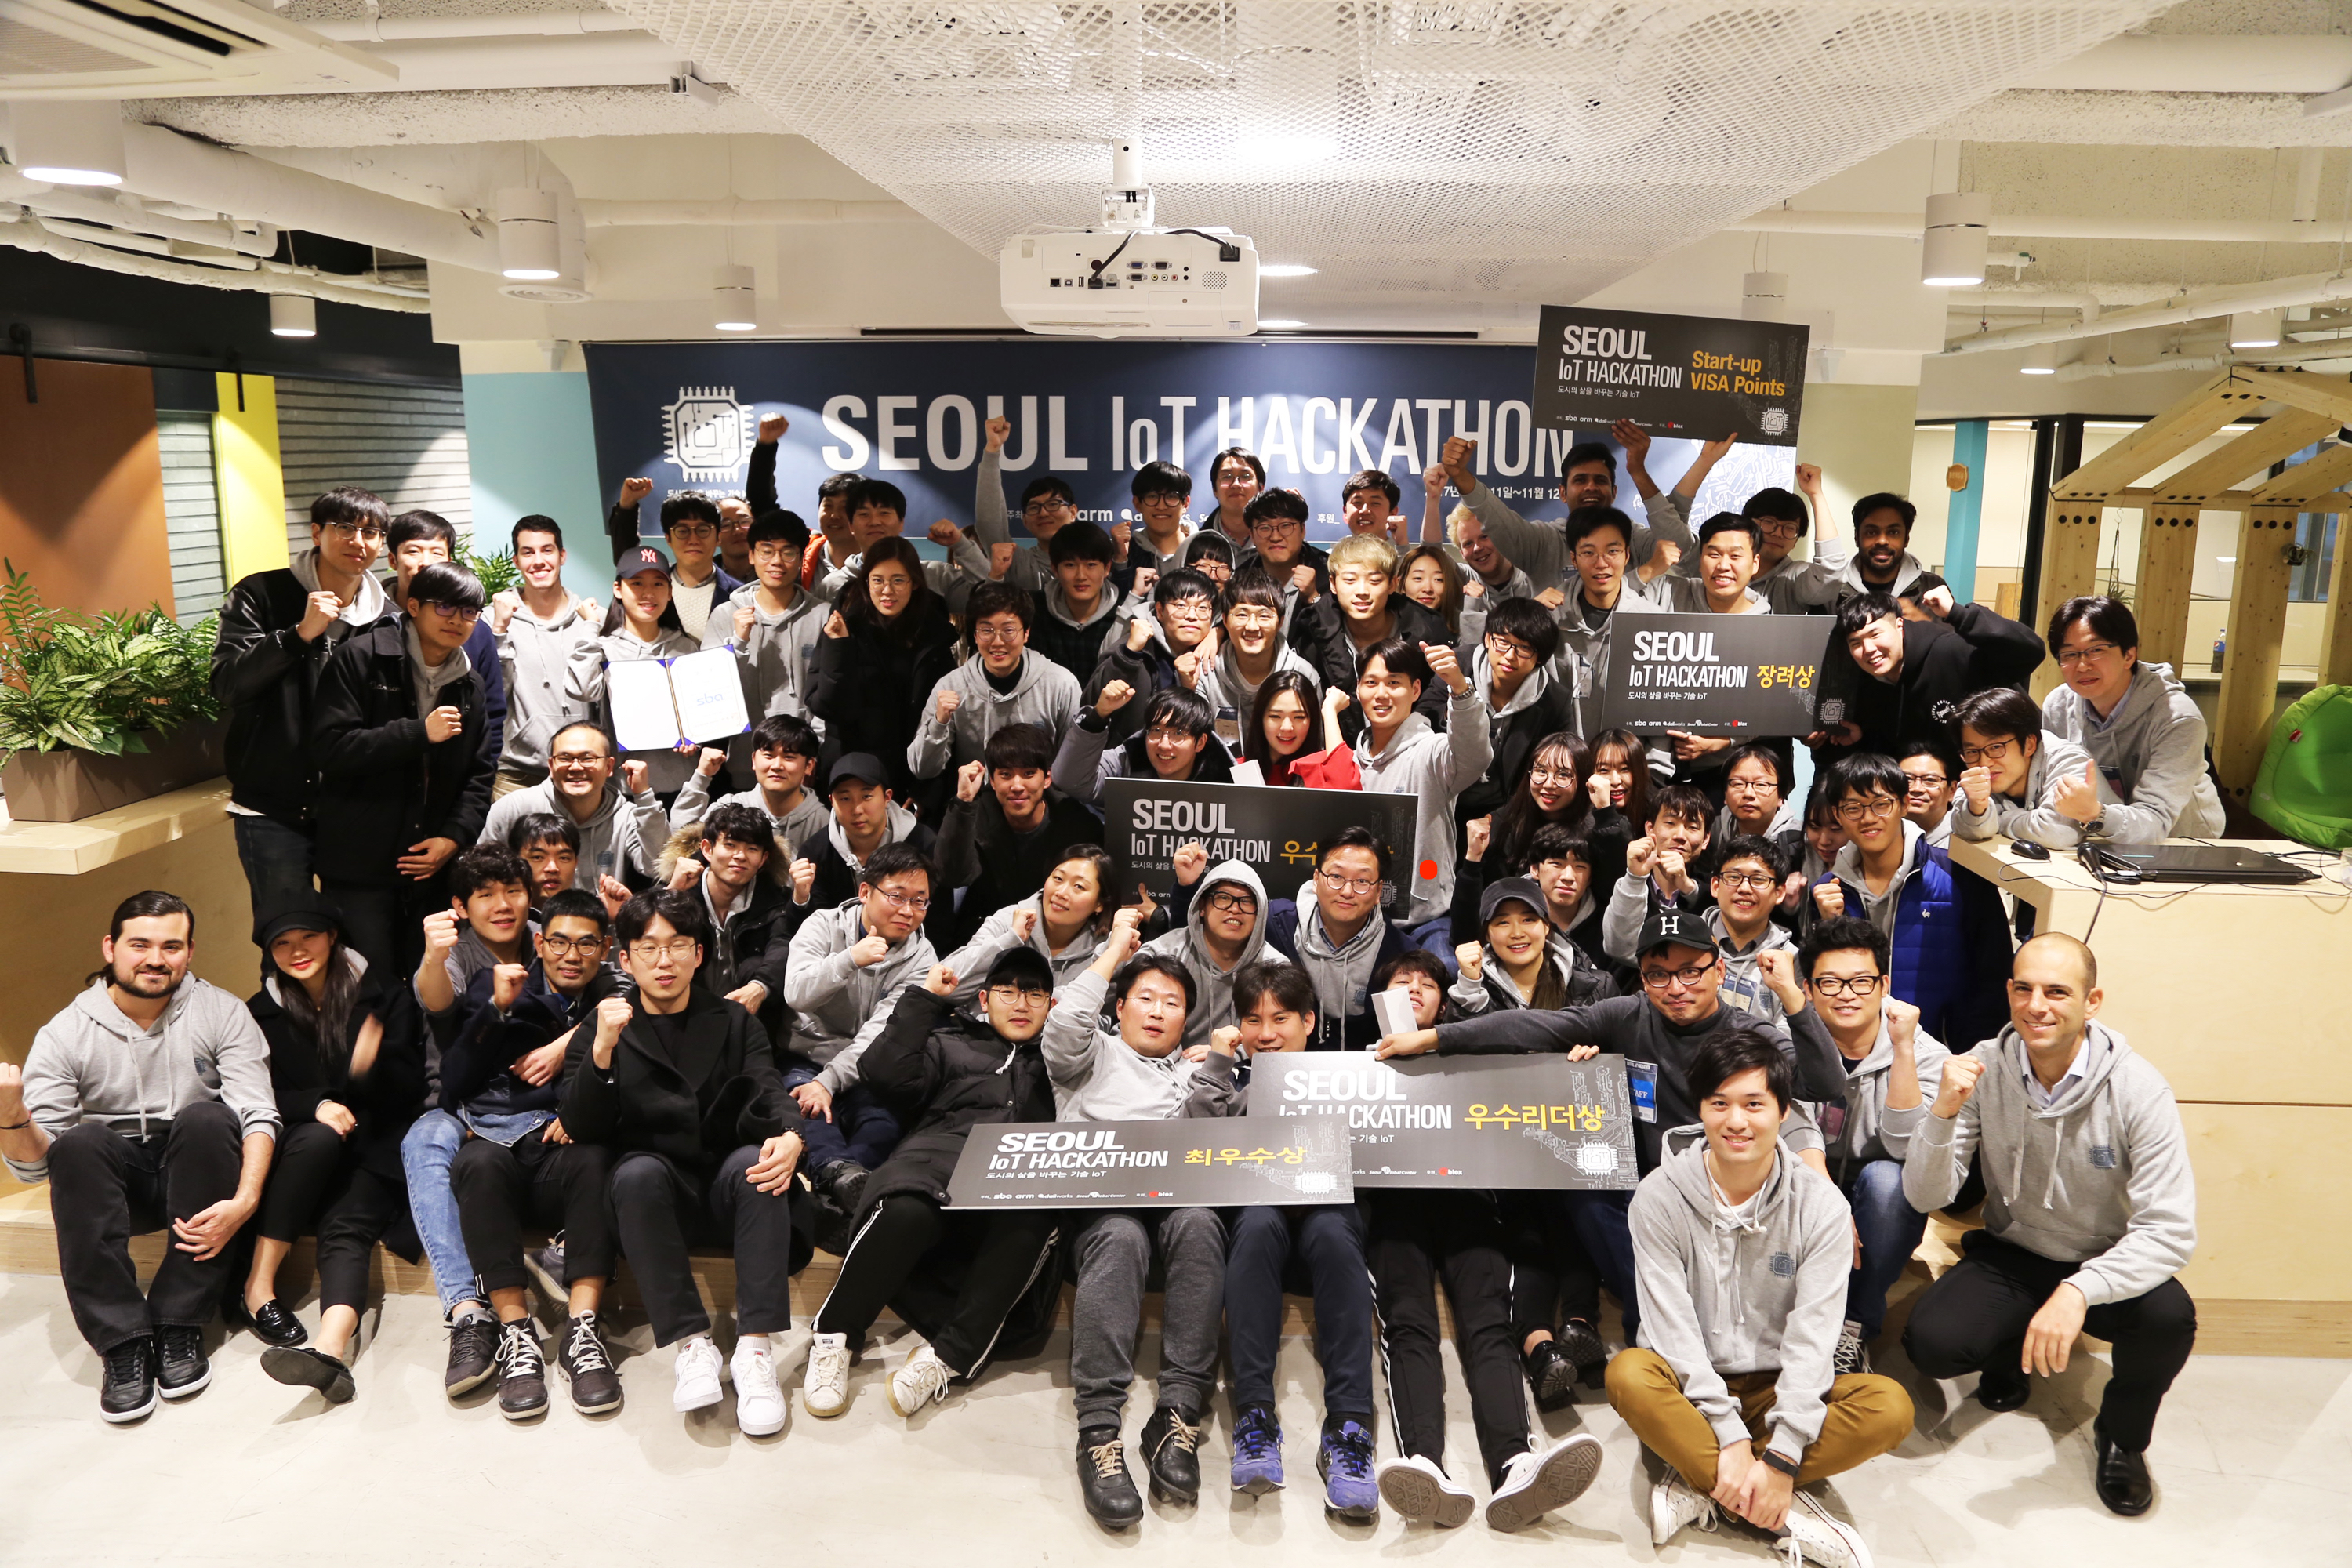 Seoul IoT hackathon participants